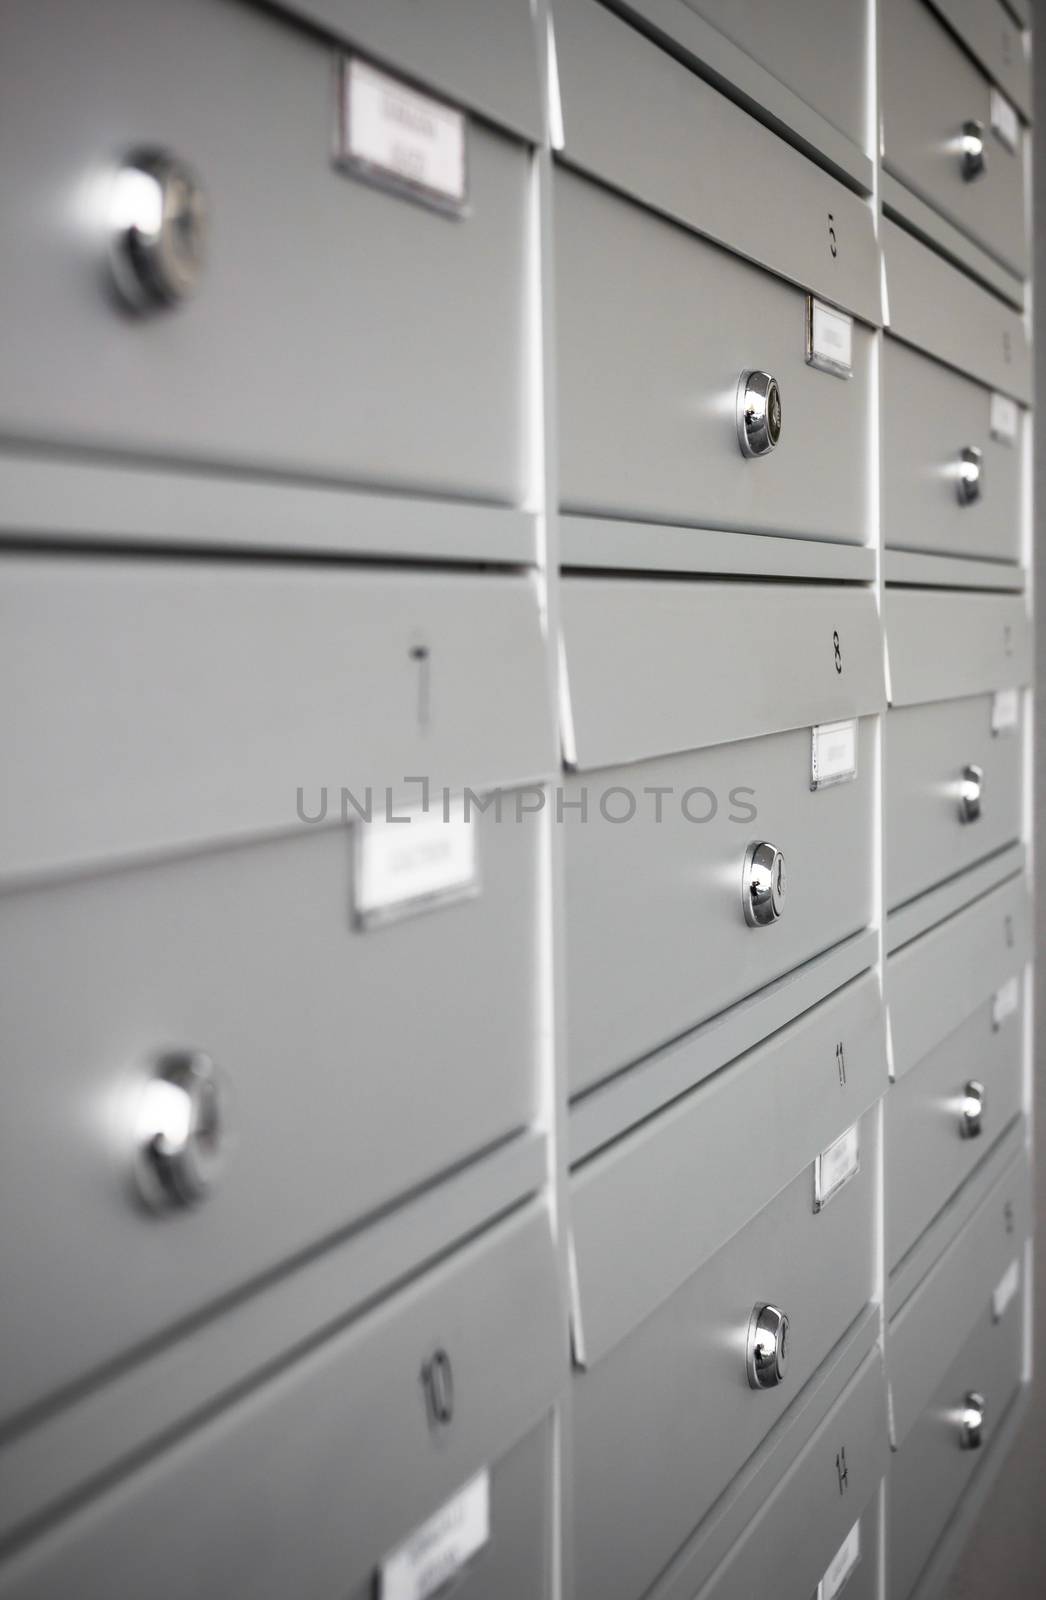 Condominium mailboxes by germanopoli